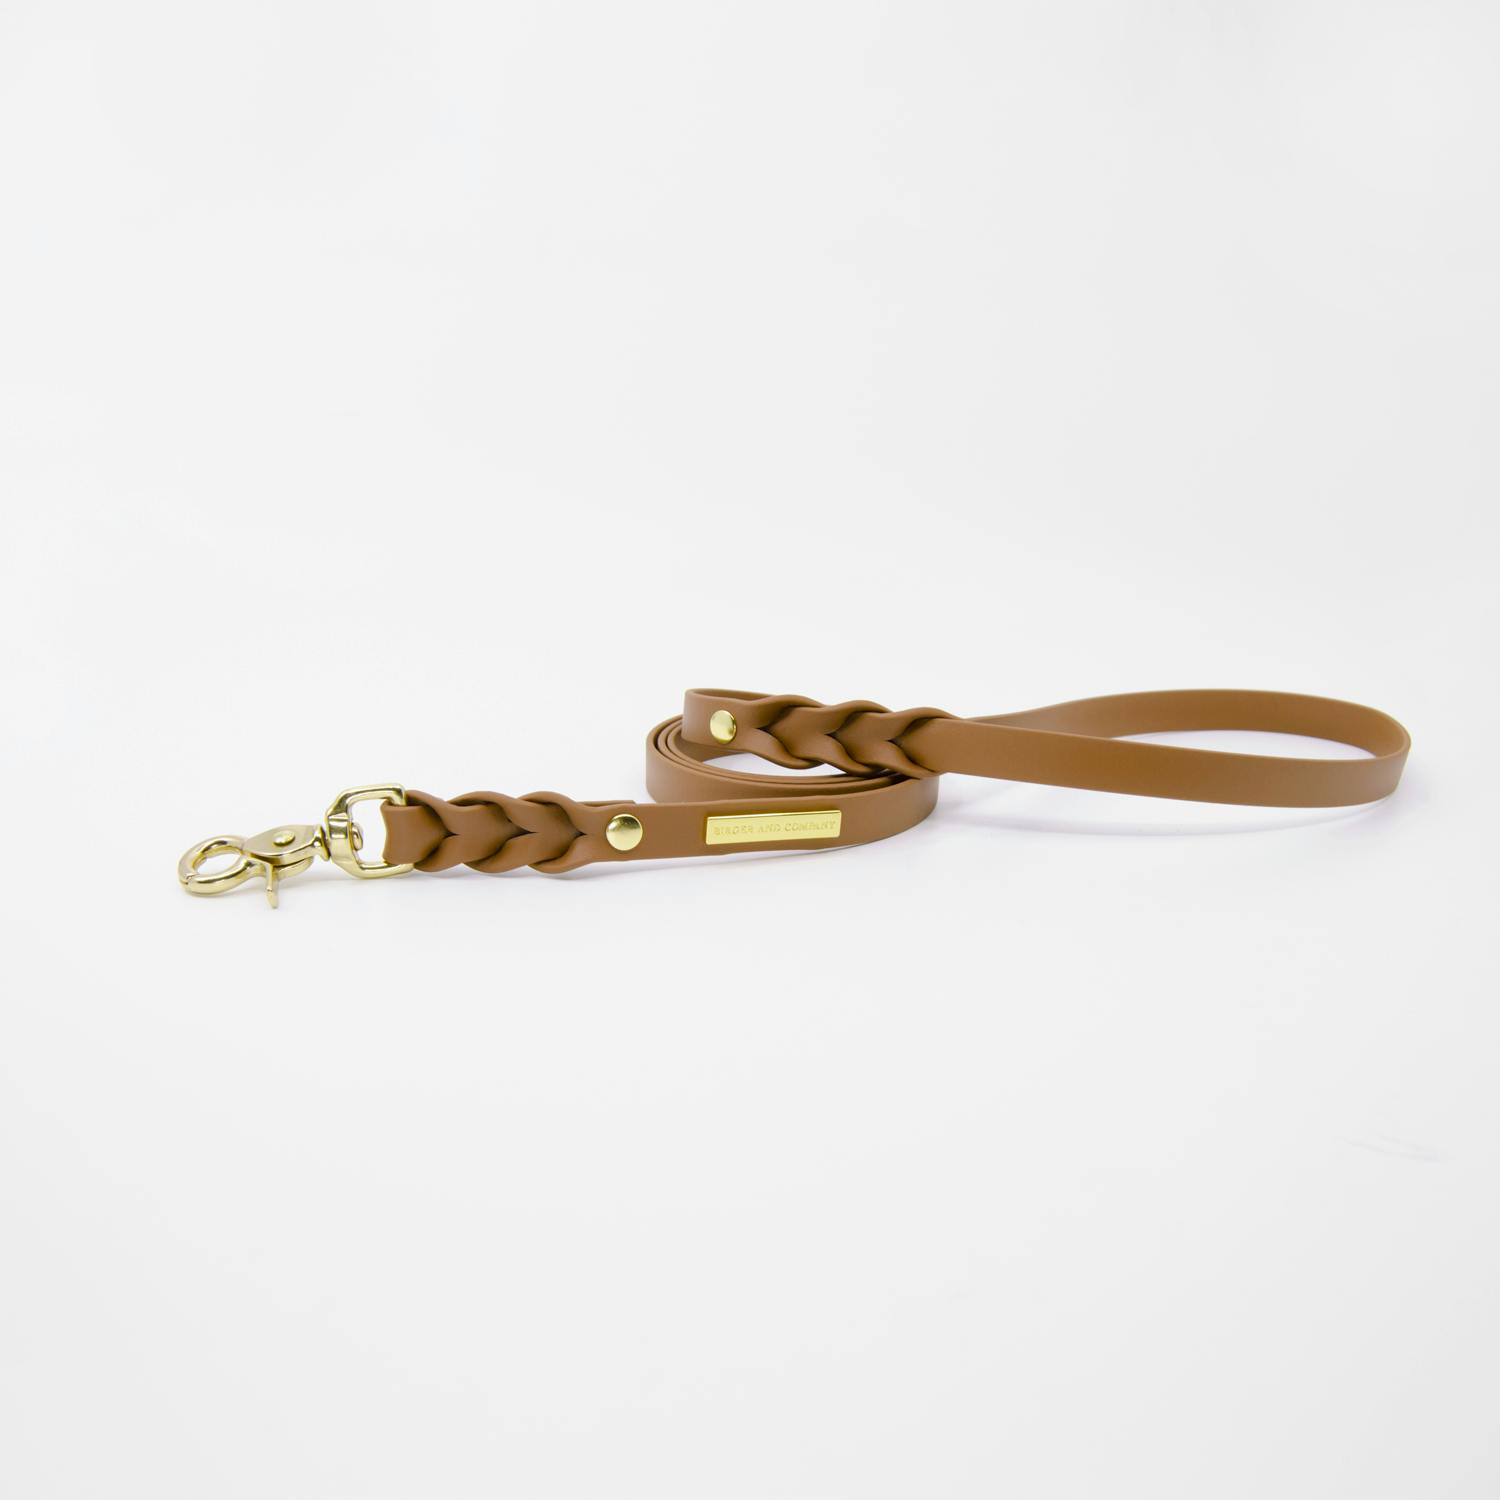 Braided leash 20 mm